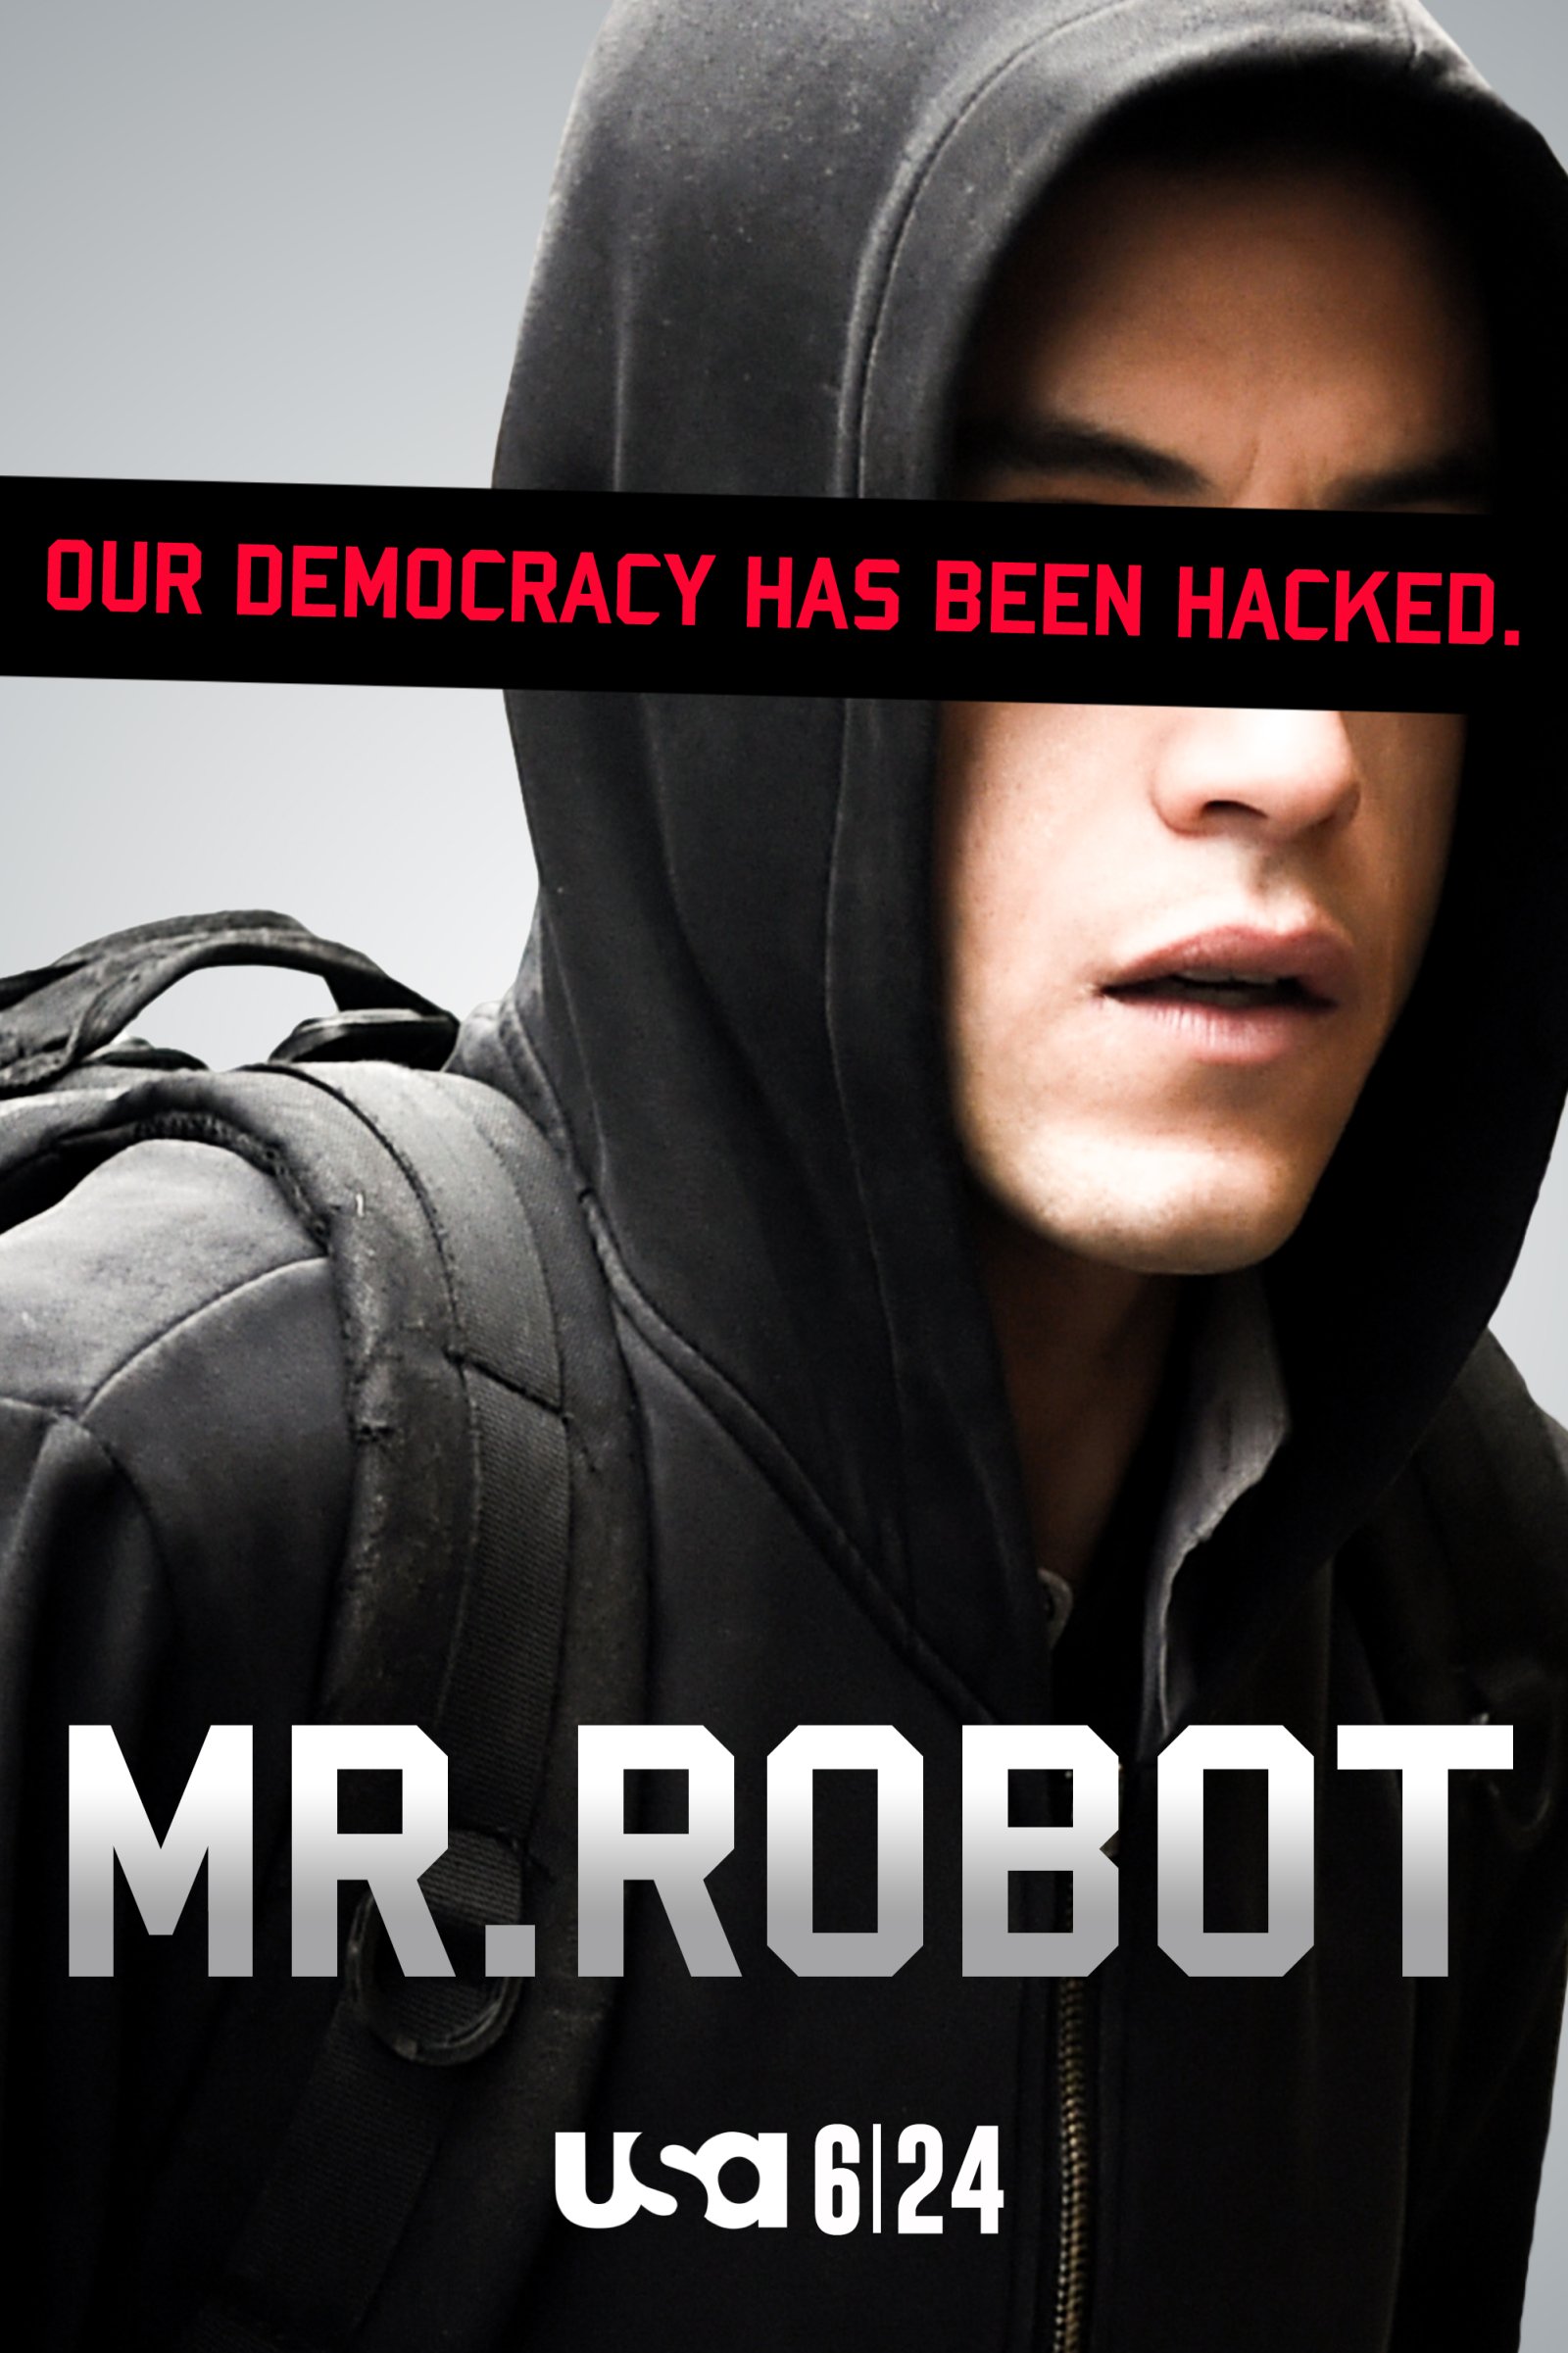 KARIM on Twitter: MR Robot 2016 @whoismrrobot S02-E01 Link https://t.co/zGVuhOPn3E Fuck Society https://t.co/qPrPf4c2jm" / Twitter